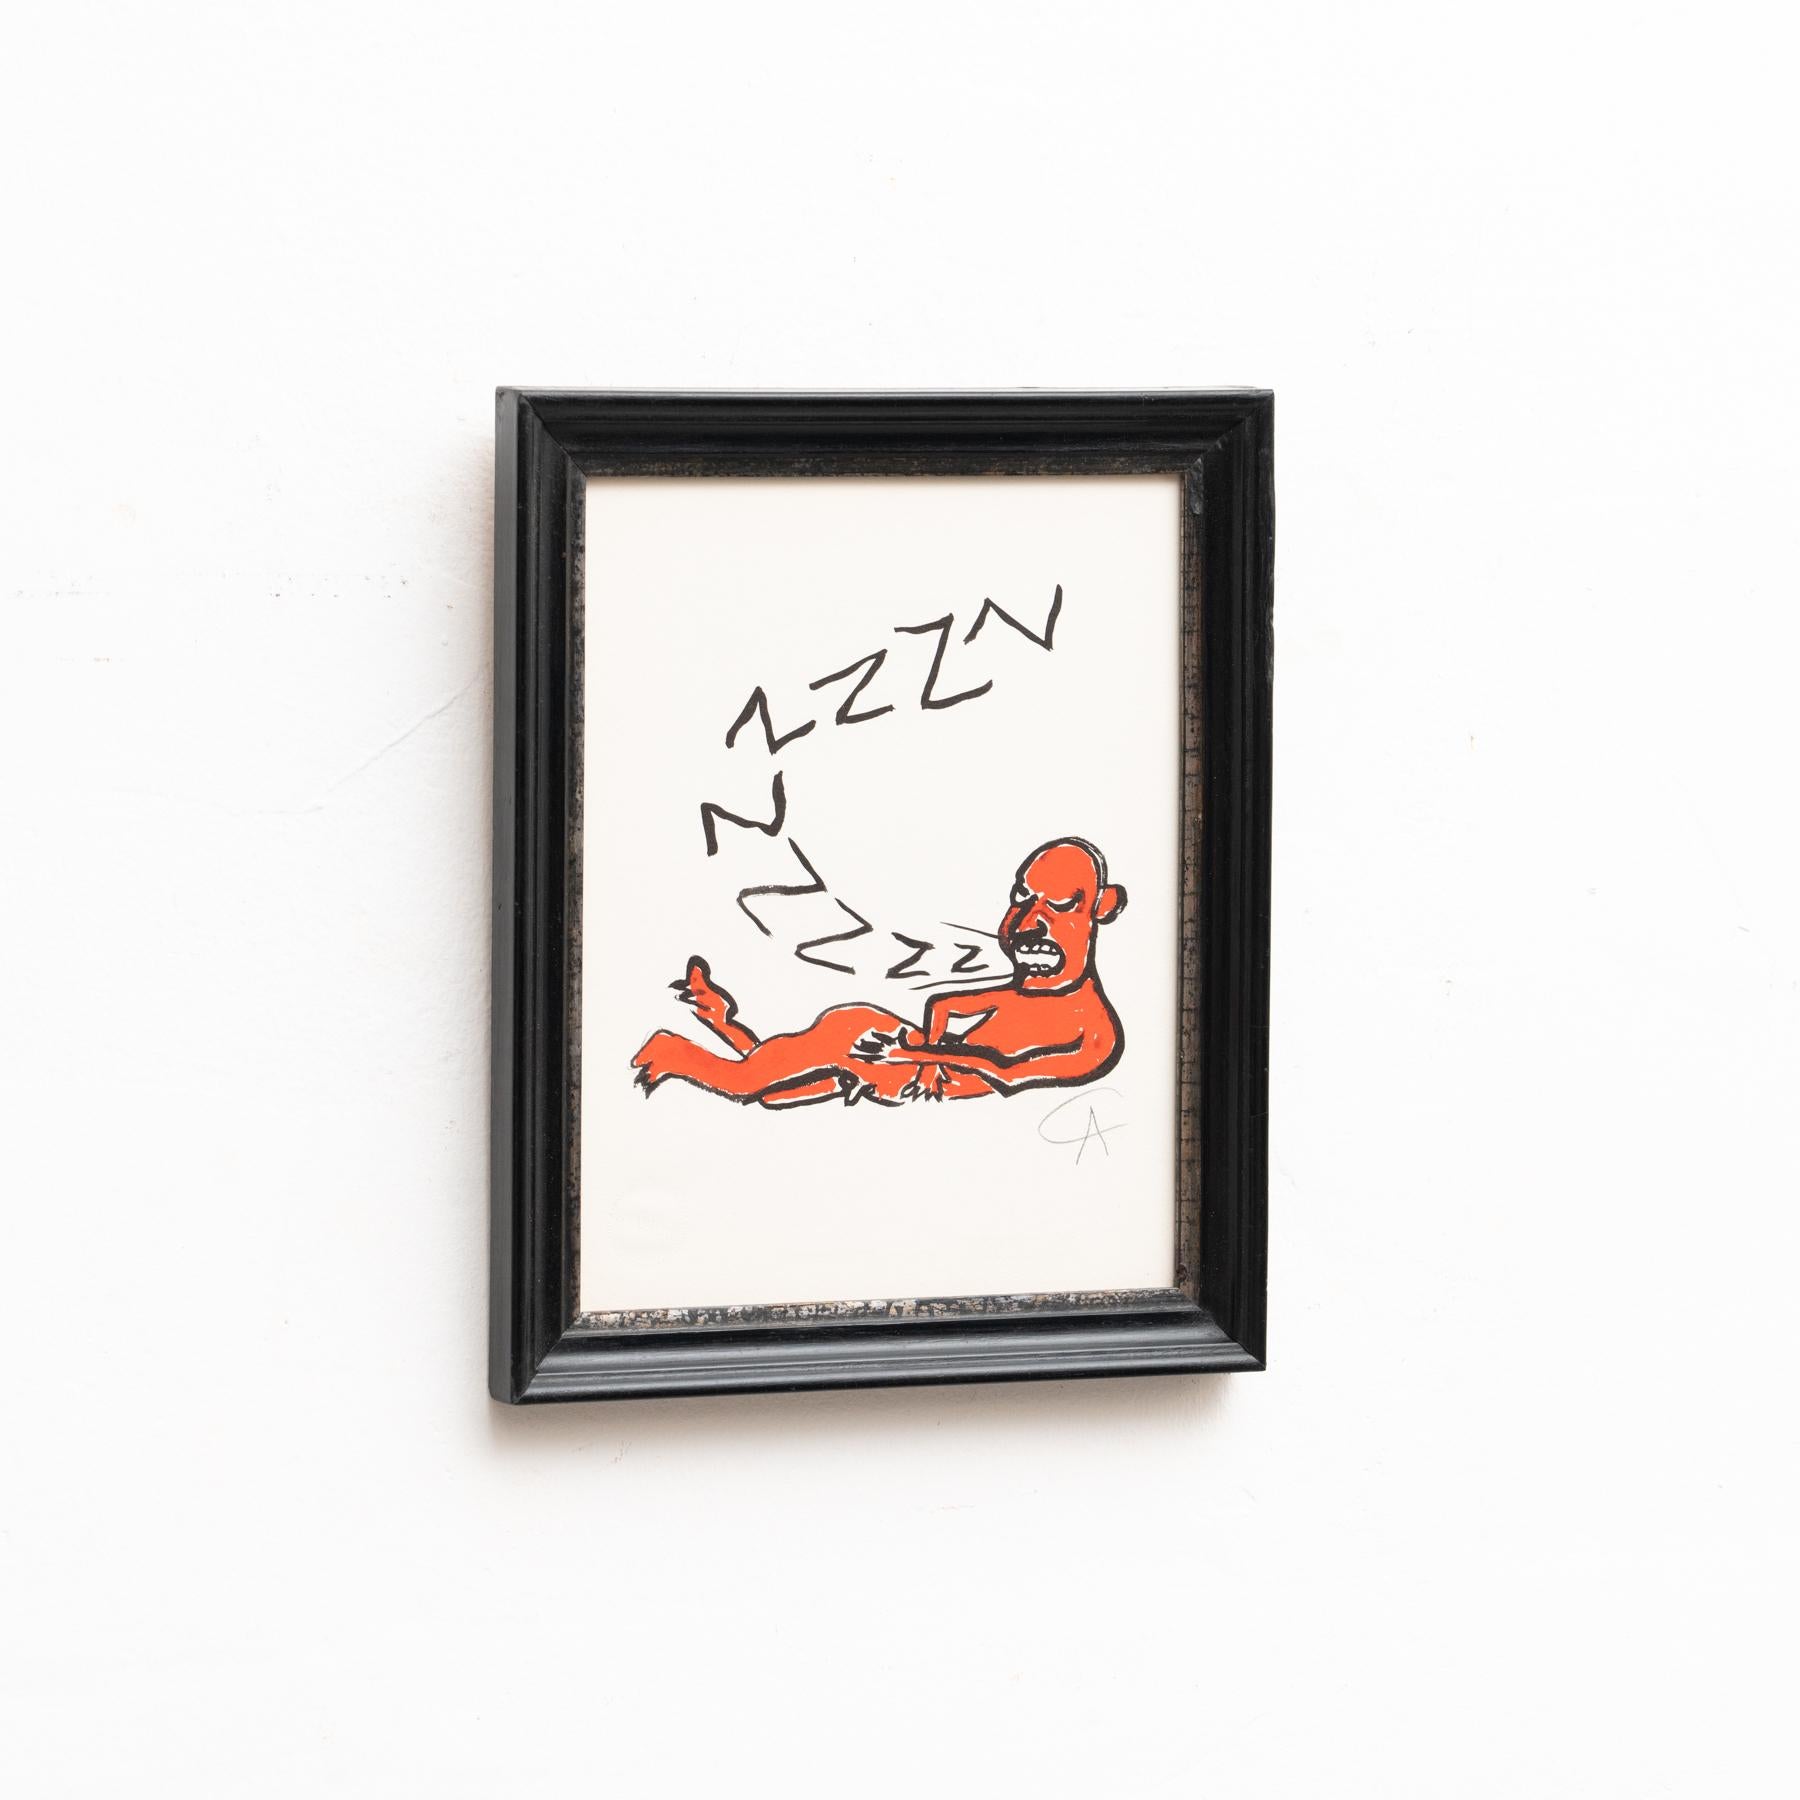 Alexander Calder, 'Z' Lithography, 1973 For Sale 2